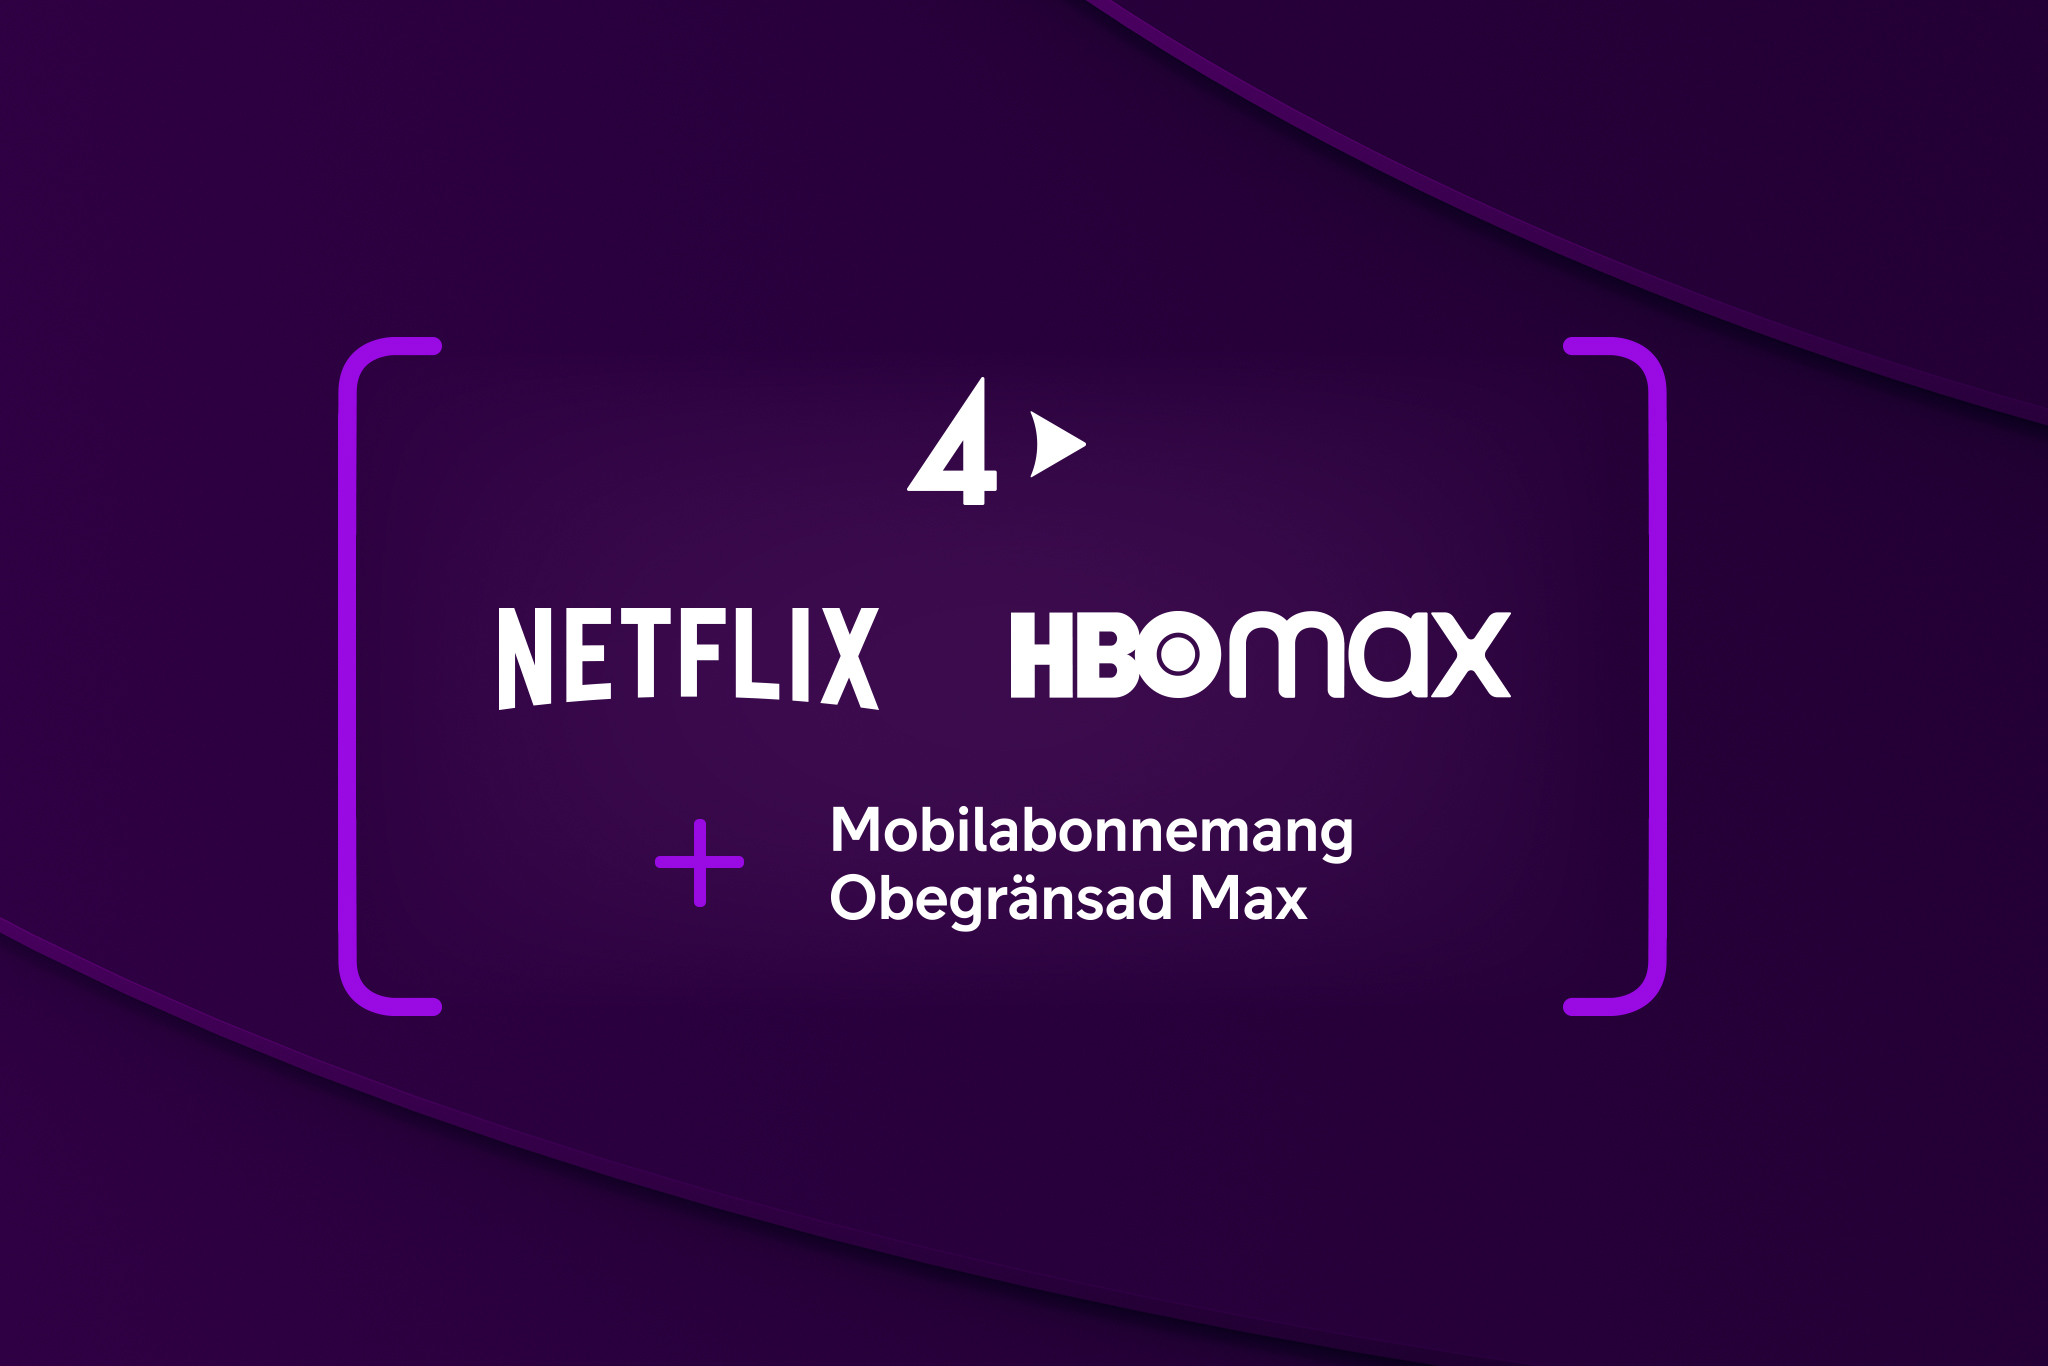 TV4 Plays logotyp, Netflixs logotyp och HBO Max logotyp med texten "+ Mobilabonnemang Obegränsad Max".